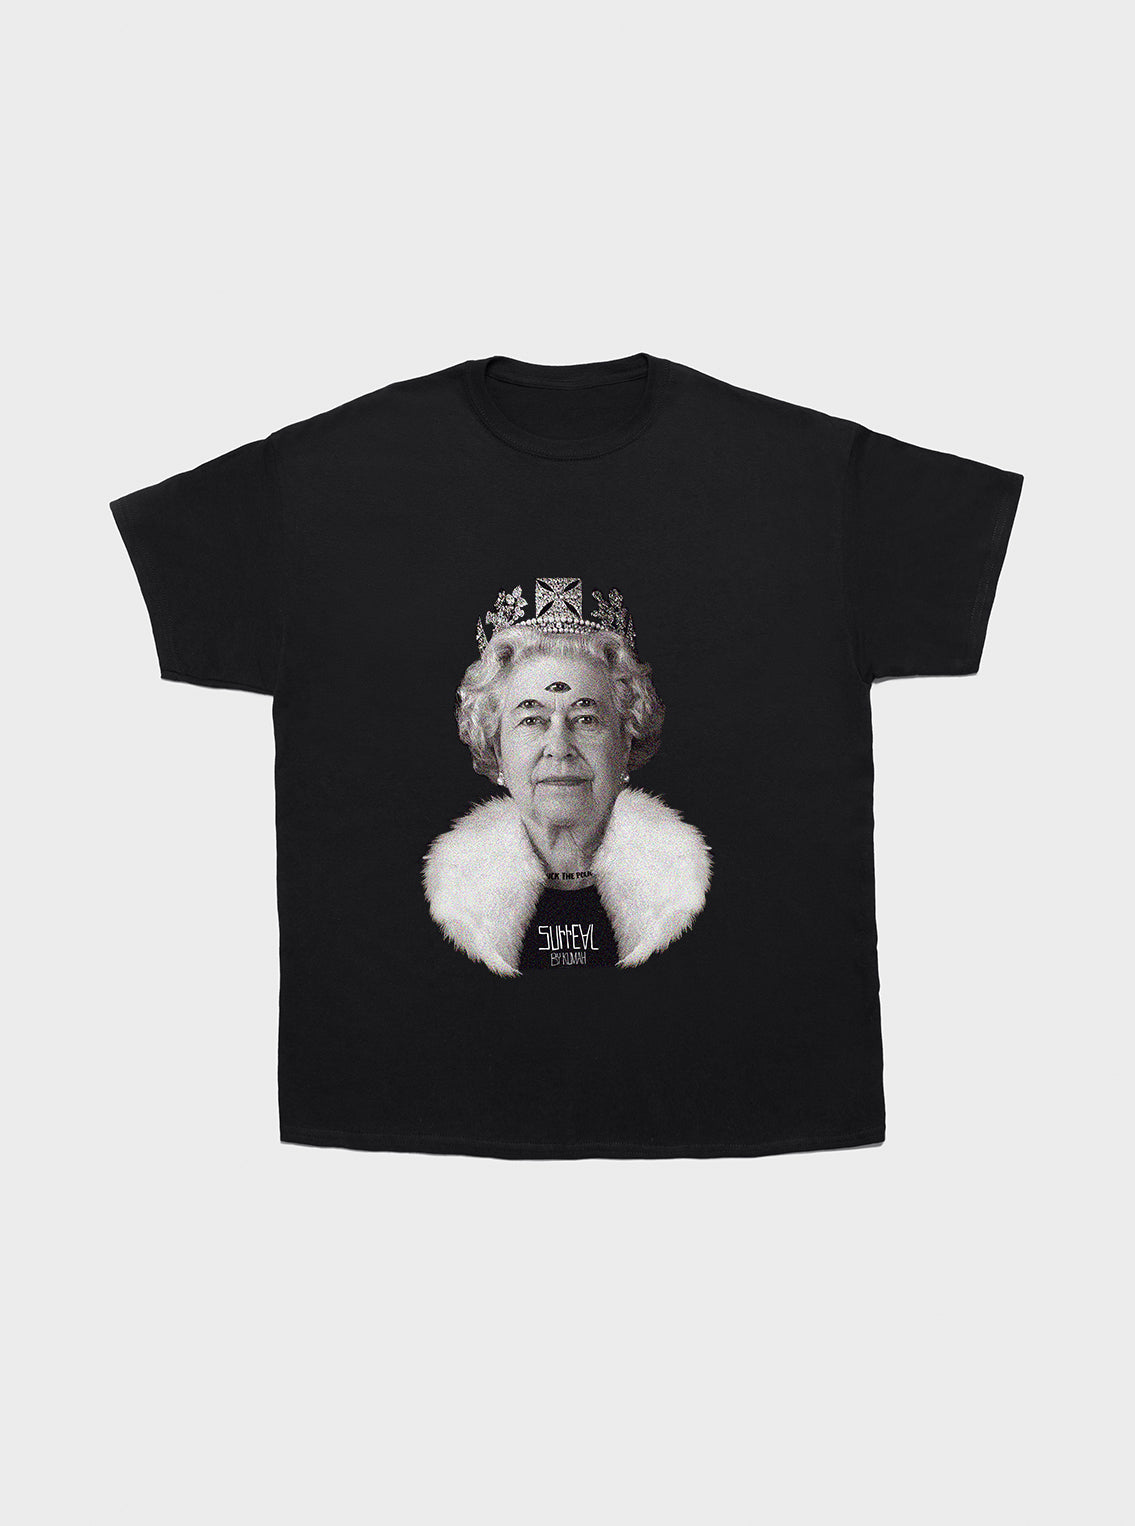 T-shirt Surreal Queen